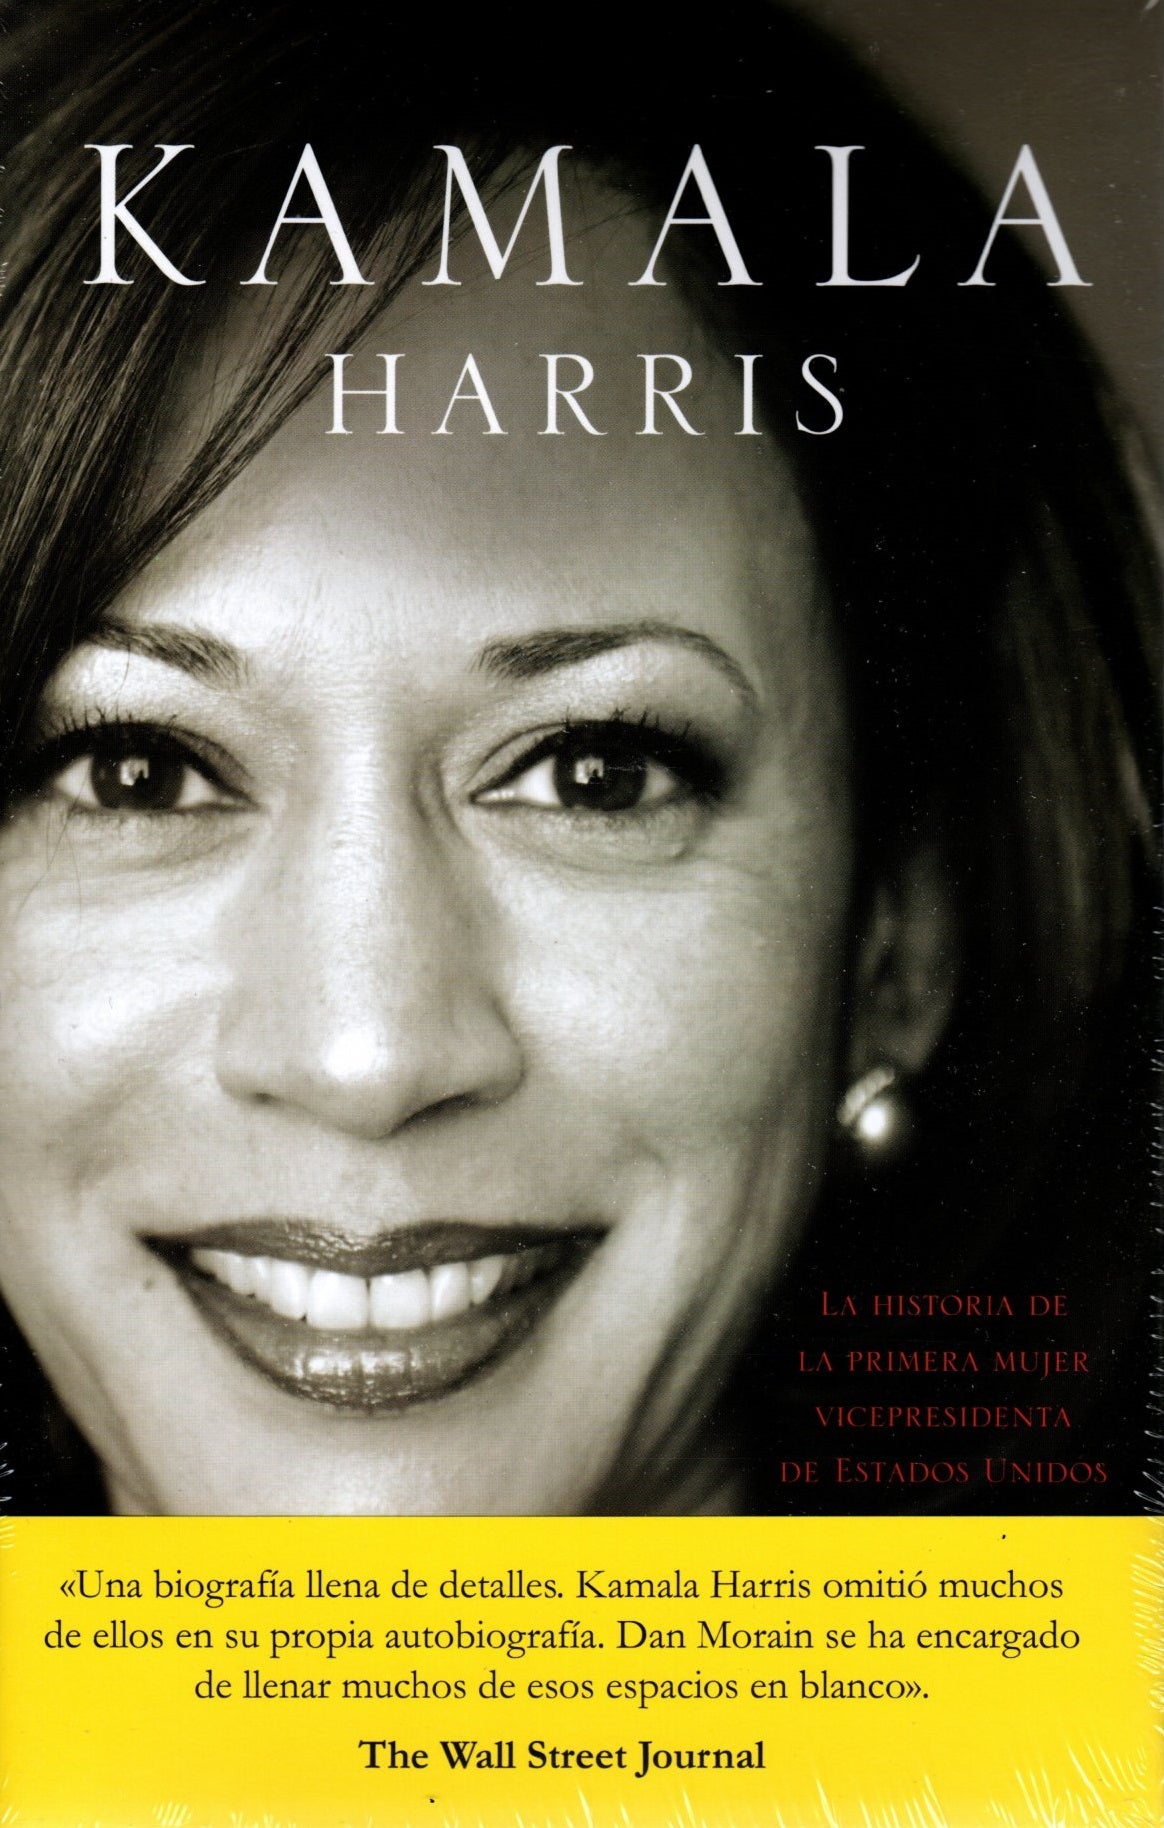 Libro Kamala Harris - La historia de la primera mujer vicepresidenta de Estados Unidos